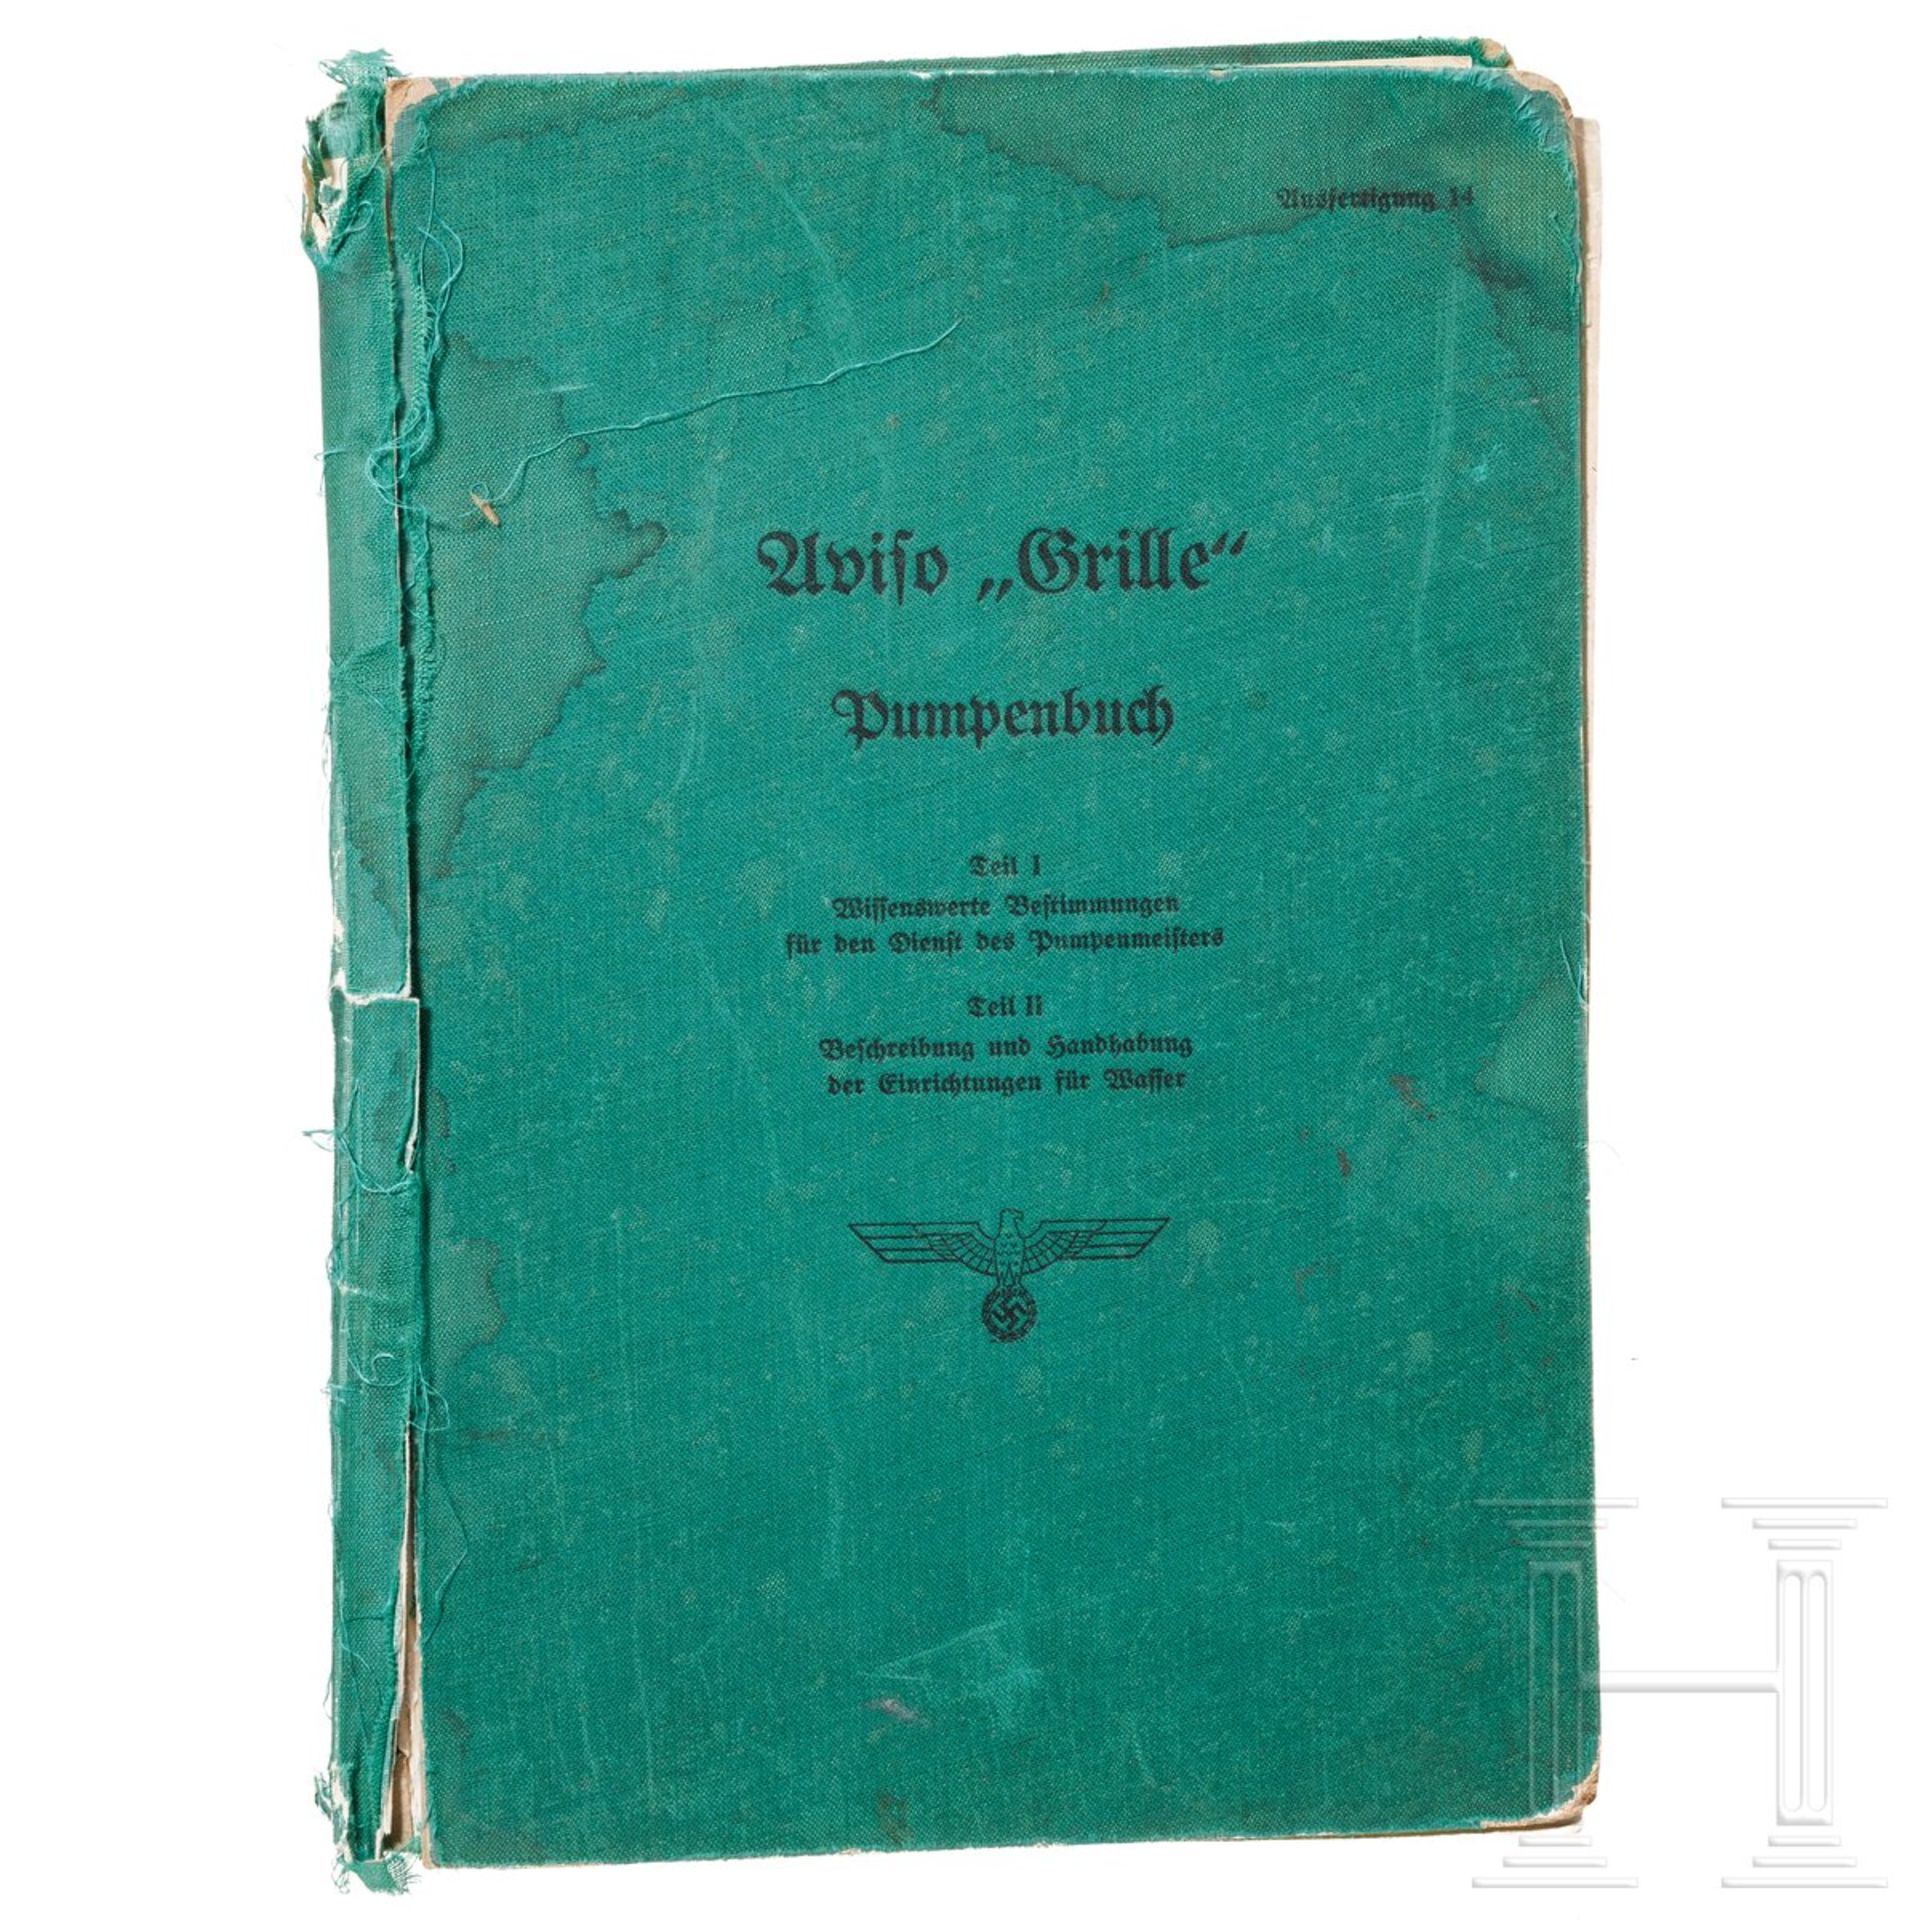 "Aviso 'Grille' - Pumpenbuch", Blohm & Voß, 14. Ausfertigung 1940 - Bild 2 aus 5